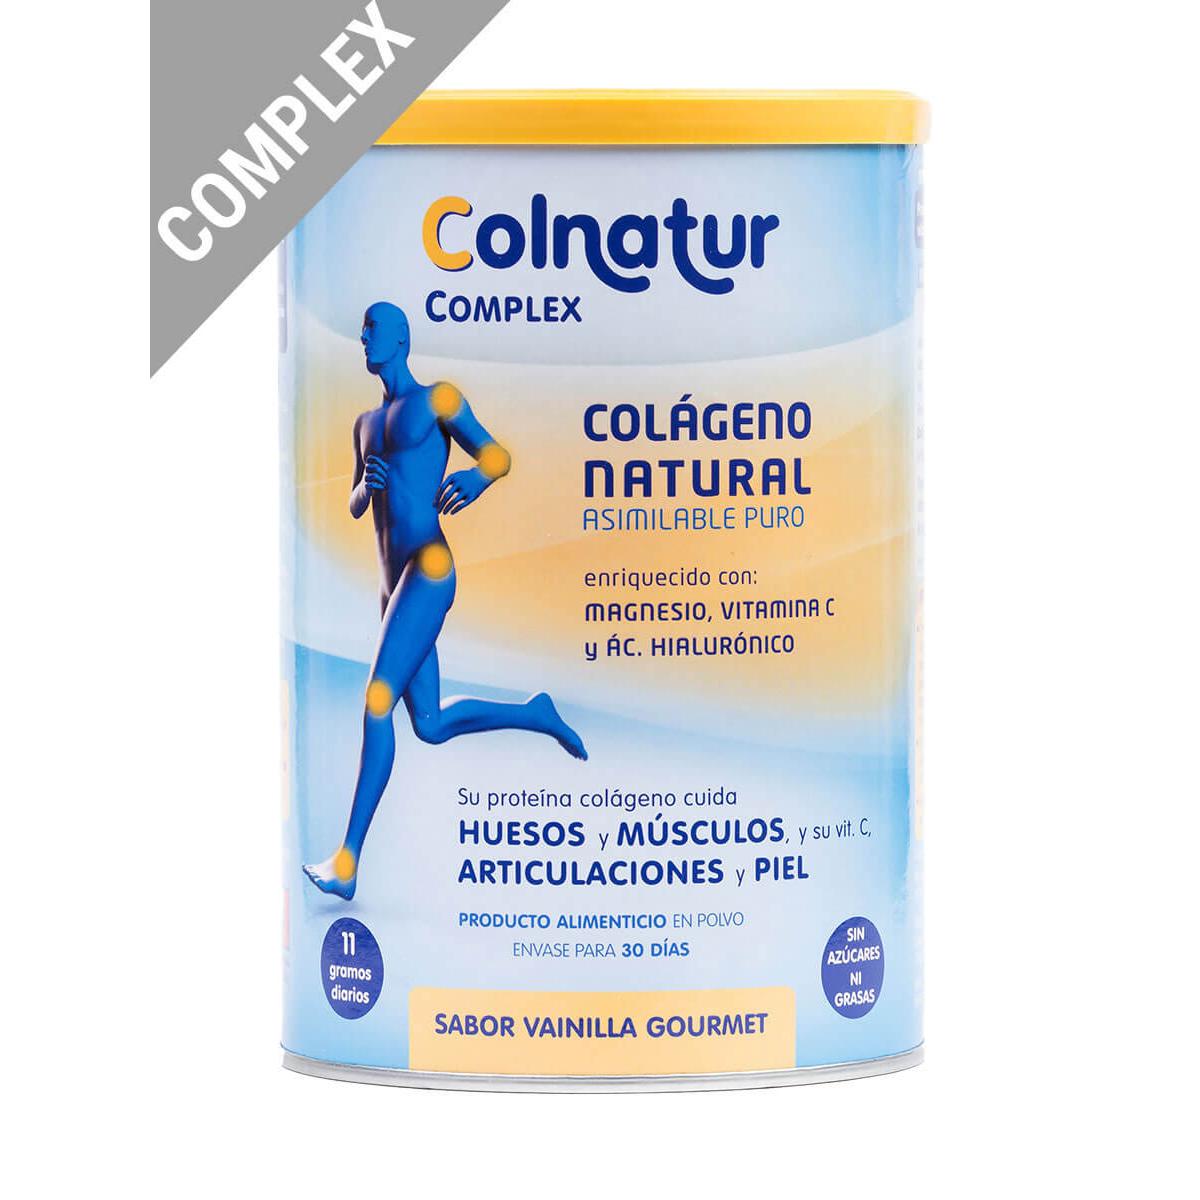 Colnatur - Colnatur ® complex colágeno sabor vainilla gourmet 330 g